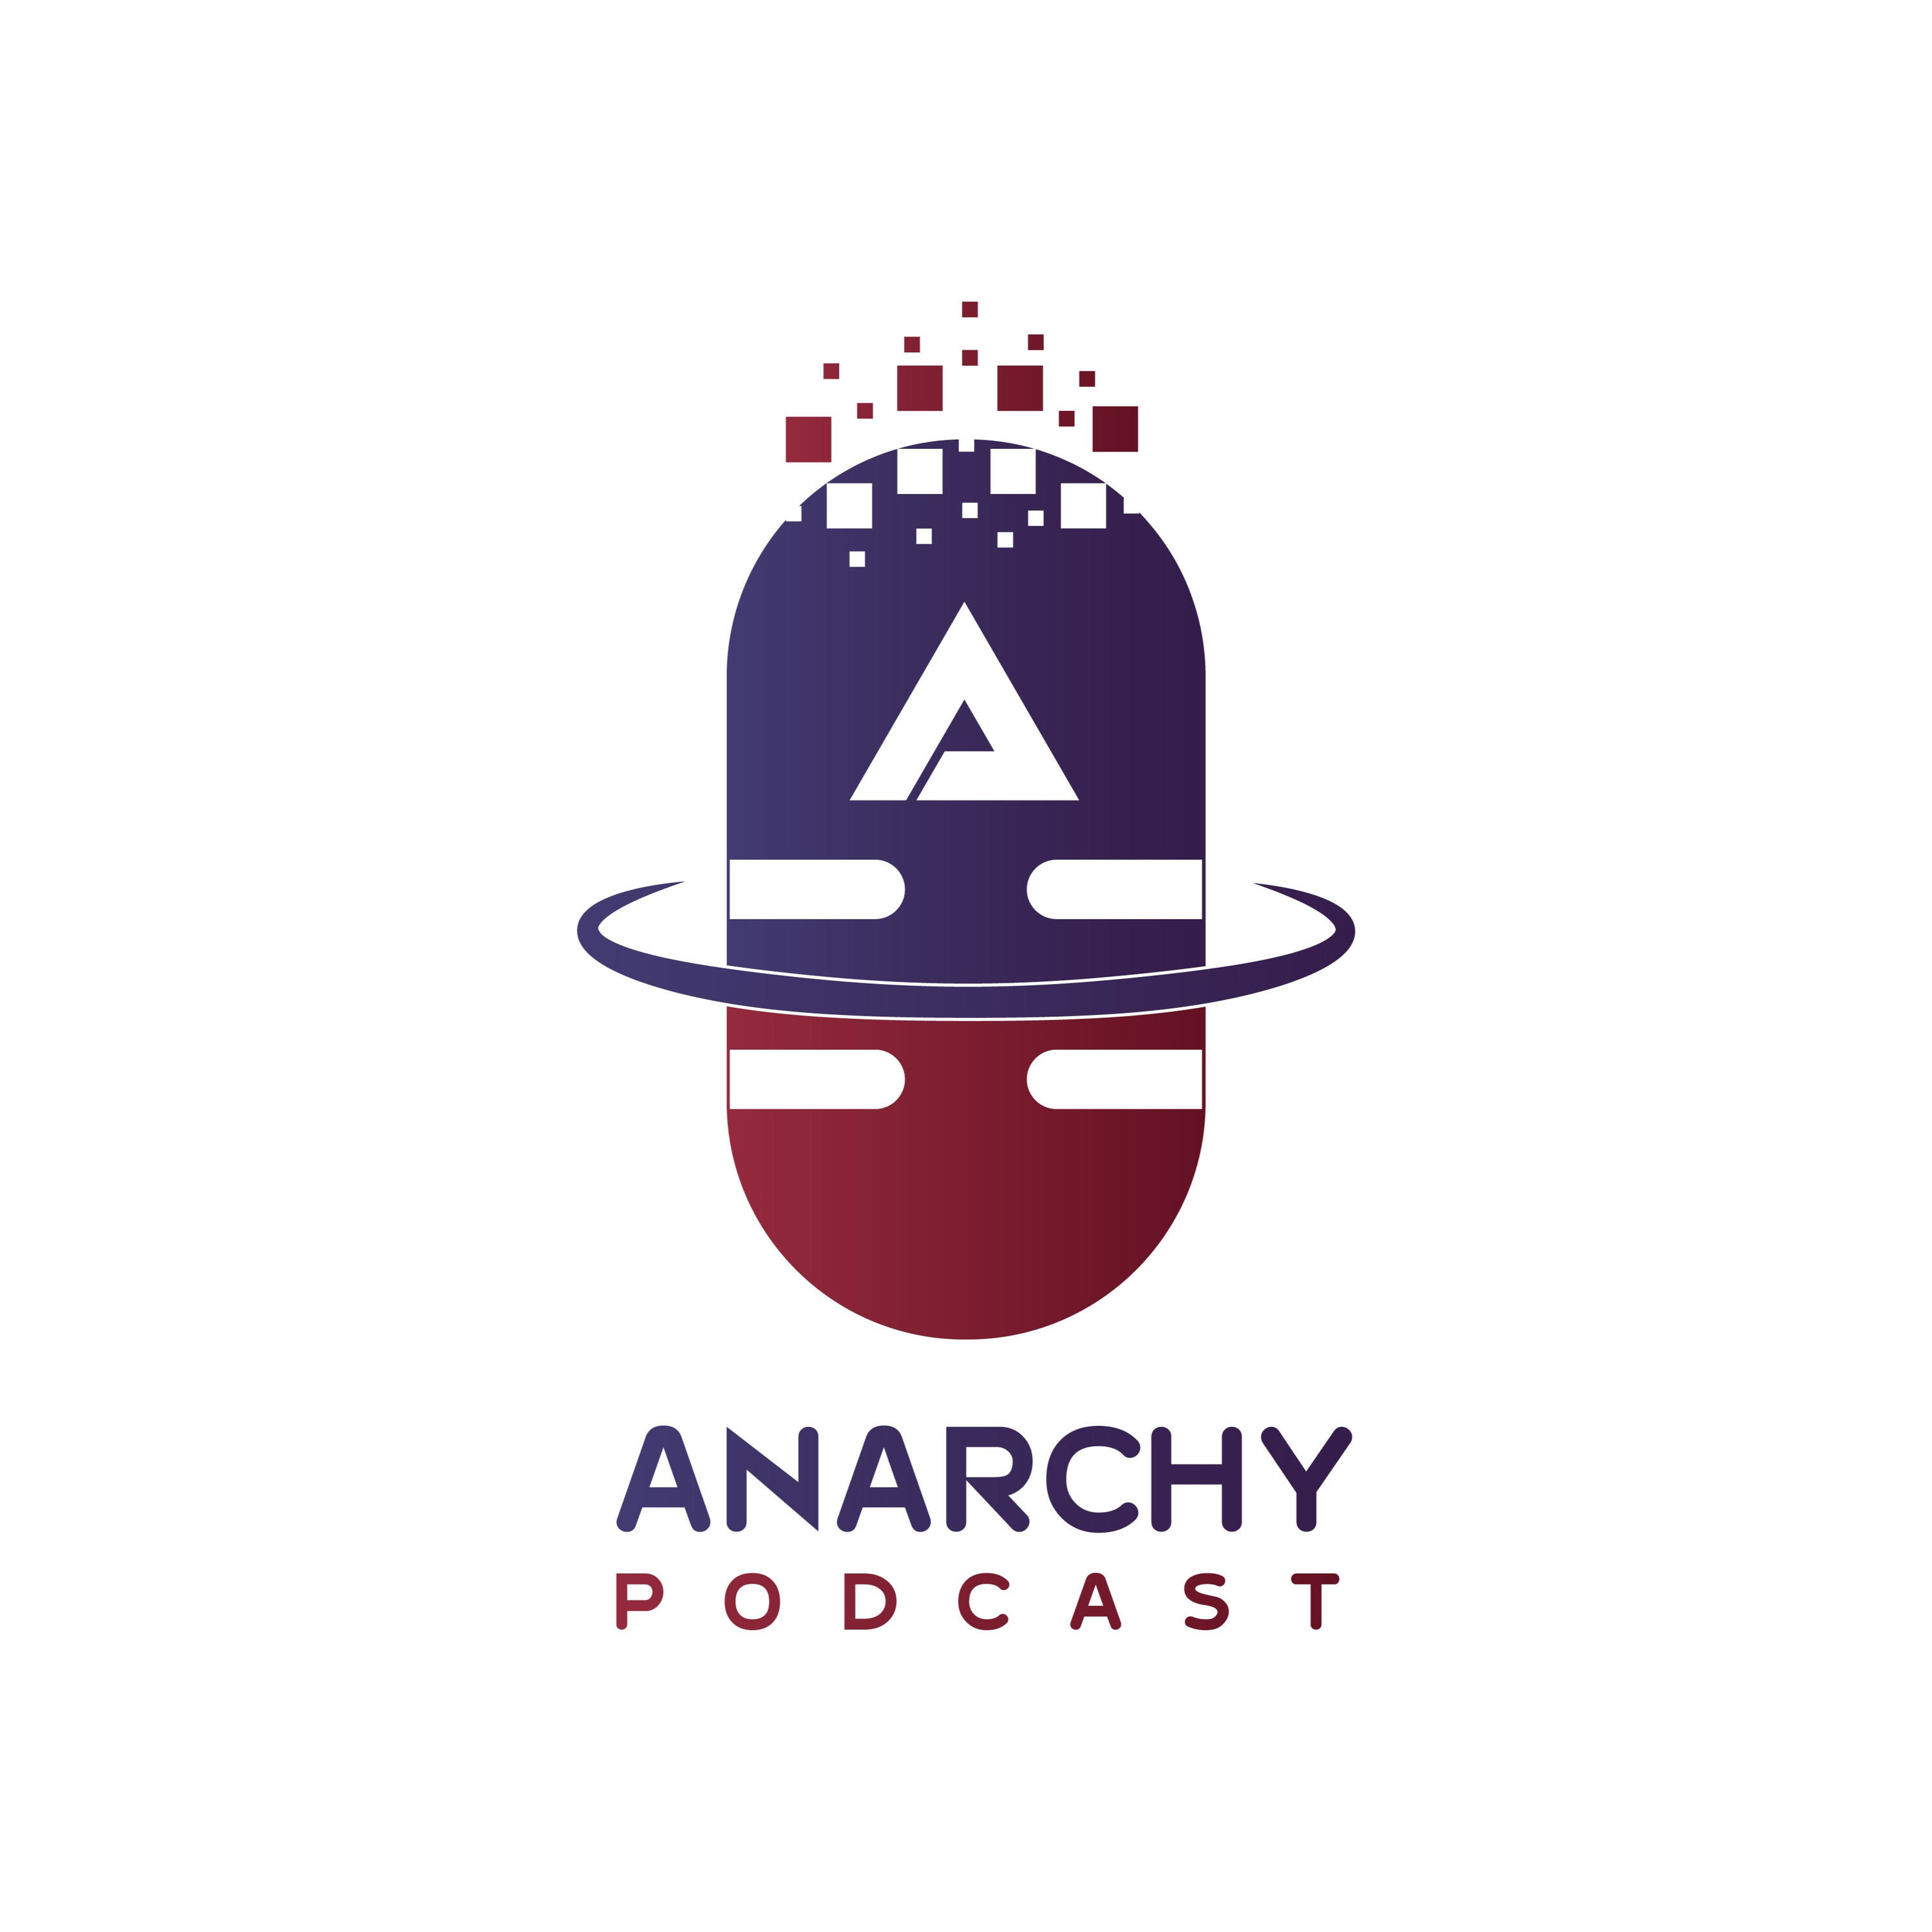 Anarchy Podcast | پادکست آنارشی